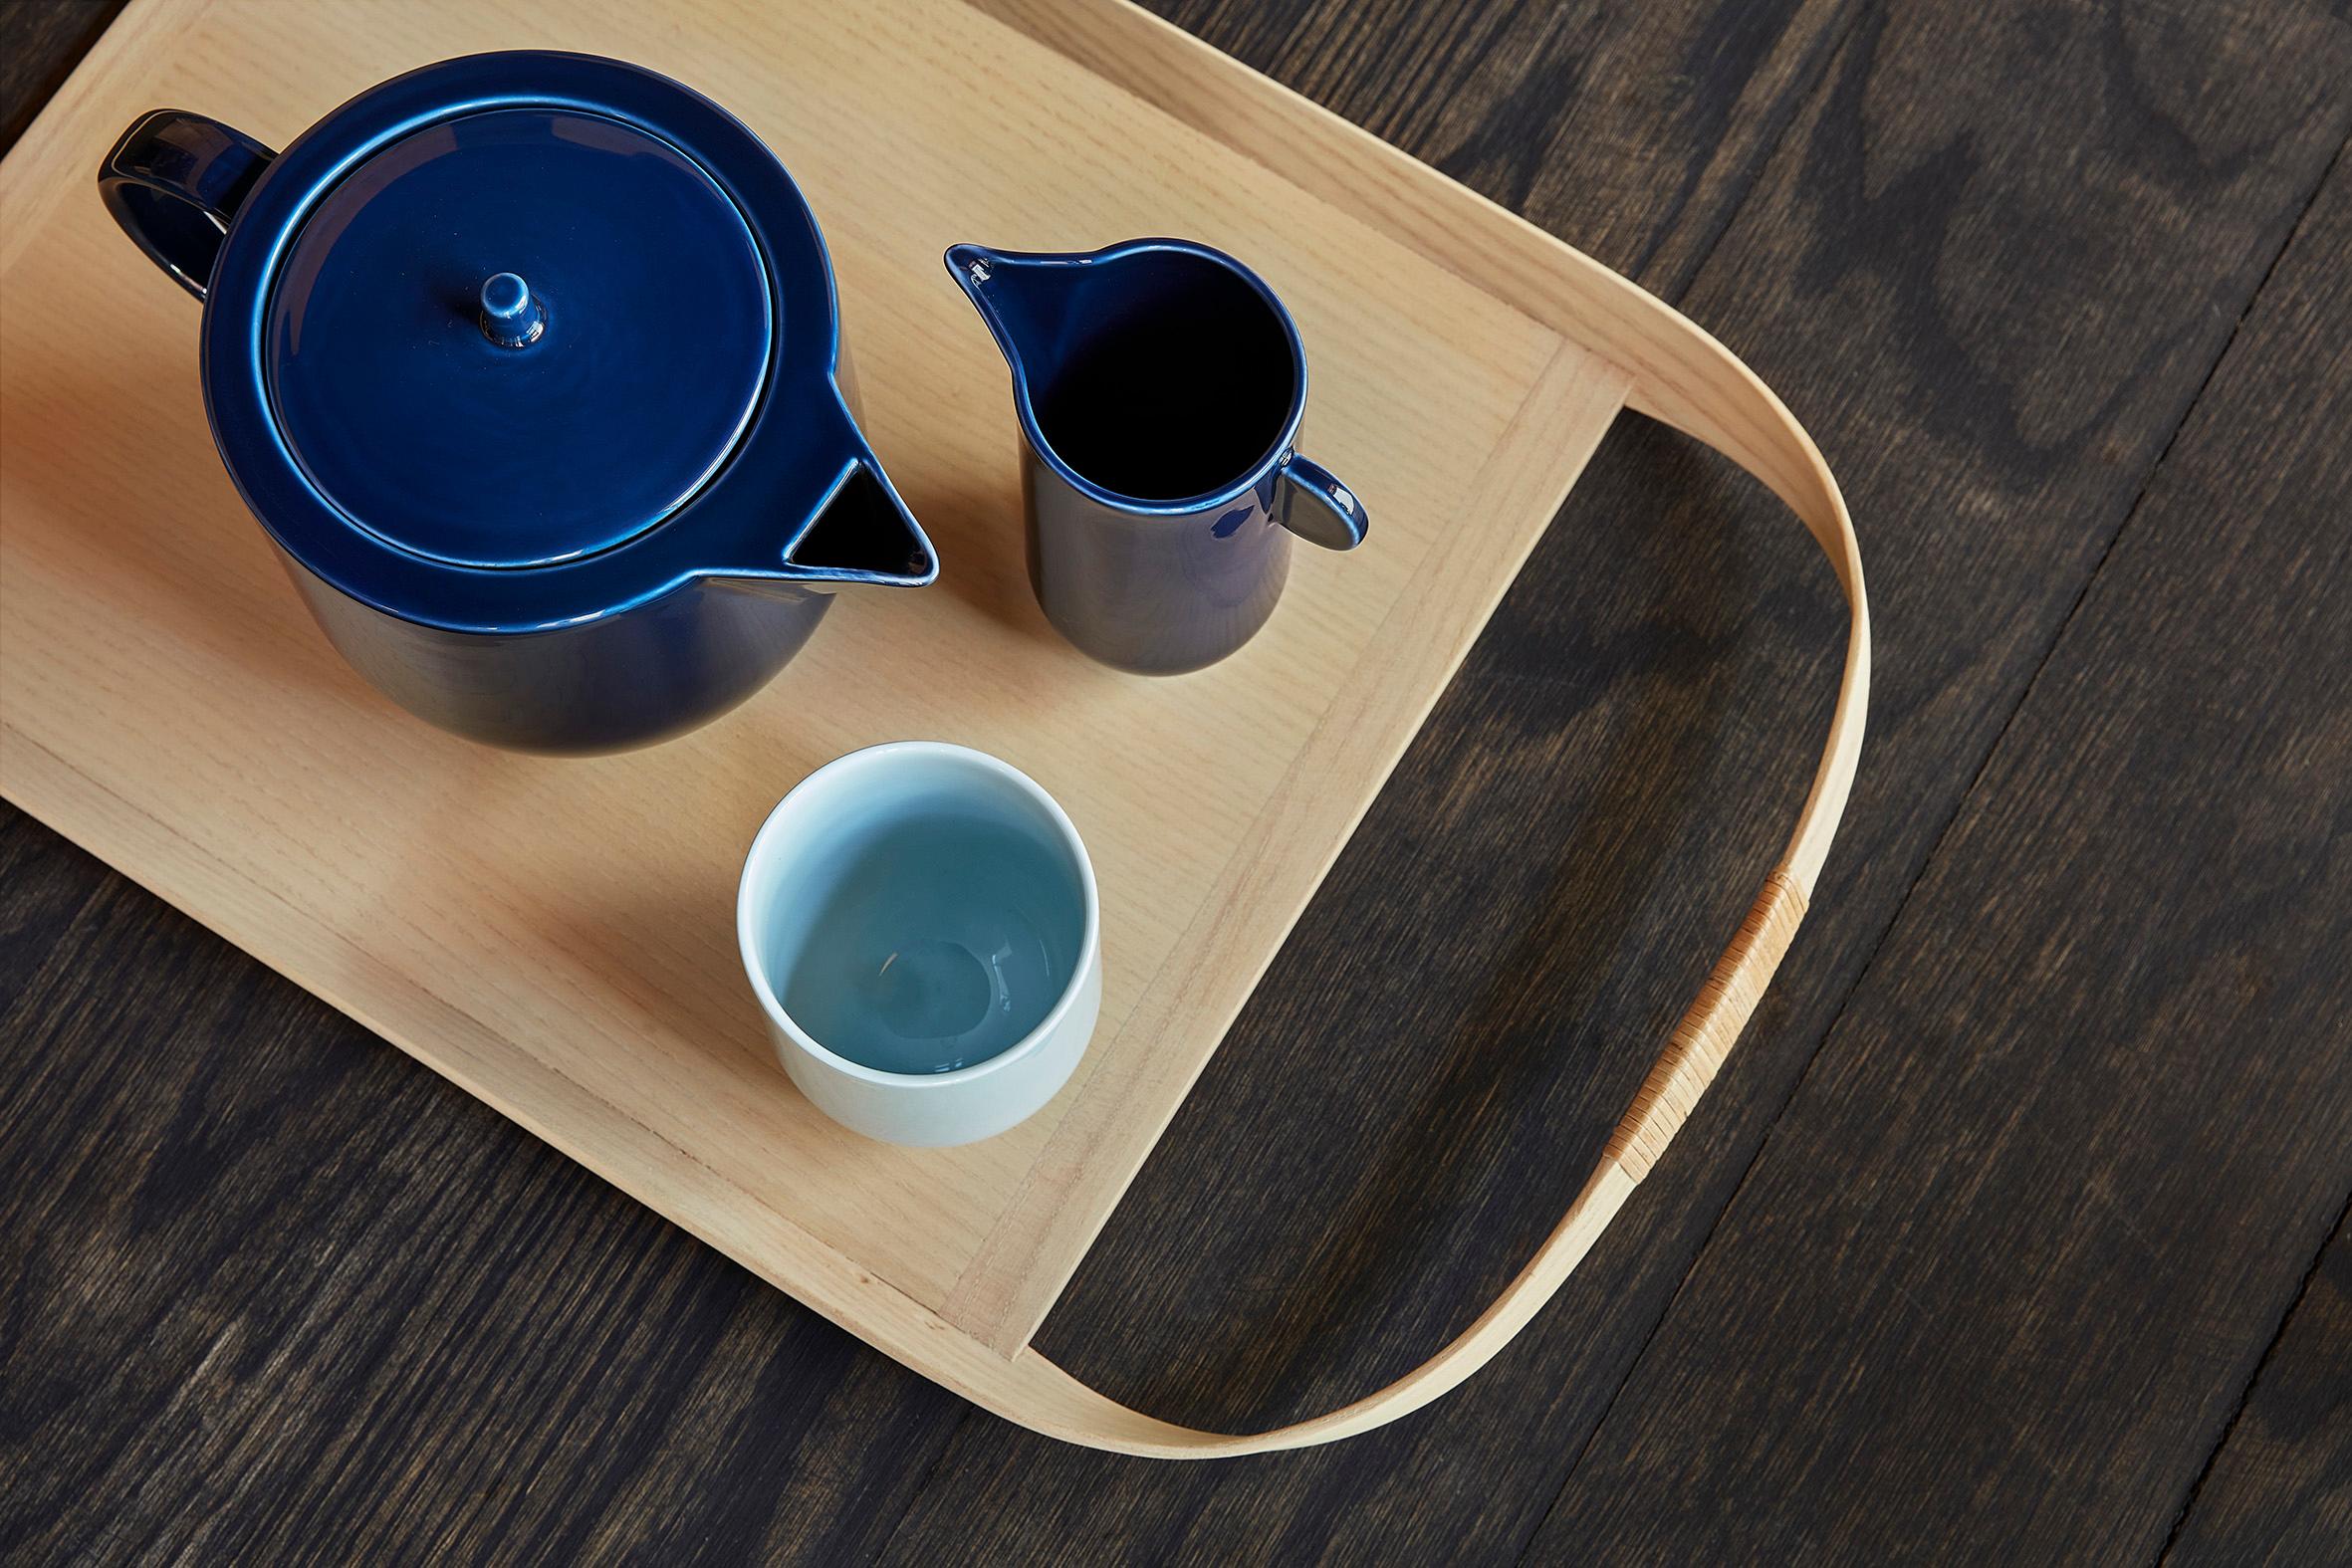 Die YOKO-Teekanne ist ein bedeutendes und unverwechselbares Stück Geschirr. Seine schlichte, skulpturale Form mit den festen, scharfen Kanten fordert das weiche MATERIAL des Porzellans heraus.

Die Teekanne ist in den Farben Rot und Dunkelmarineblau